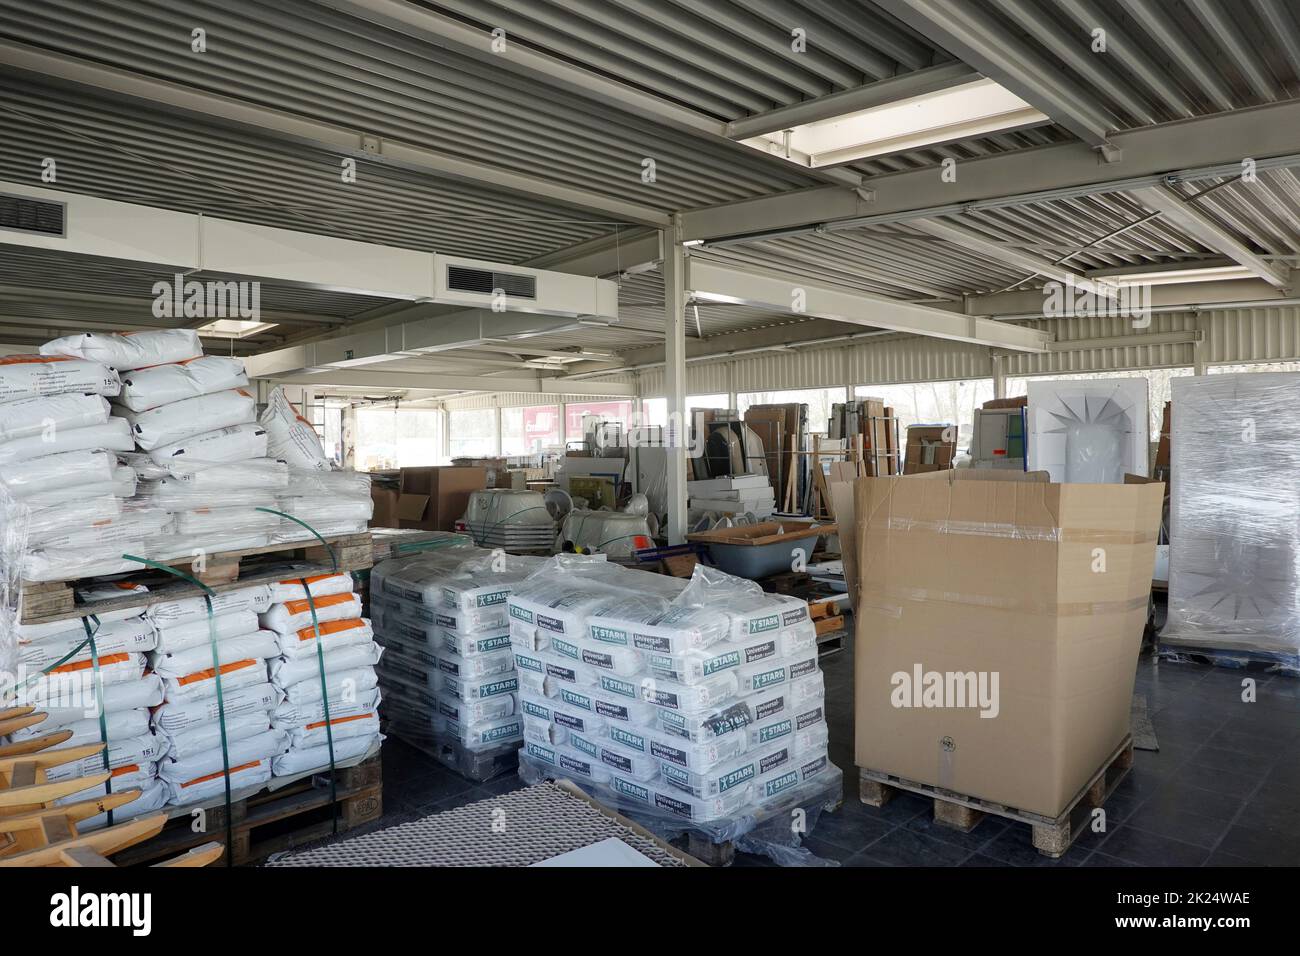 Gespendete Baumeterialien in einer Lagerhalle, die kostenlos an Opfer der Flutkatastrophe im Juli 2021 abgegeben werden, Nordrhein-Westfalen, Deutschl Banque D'Images